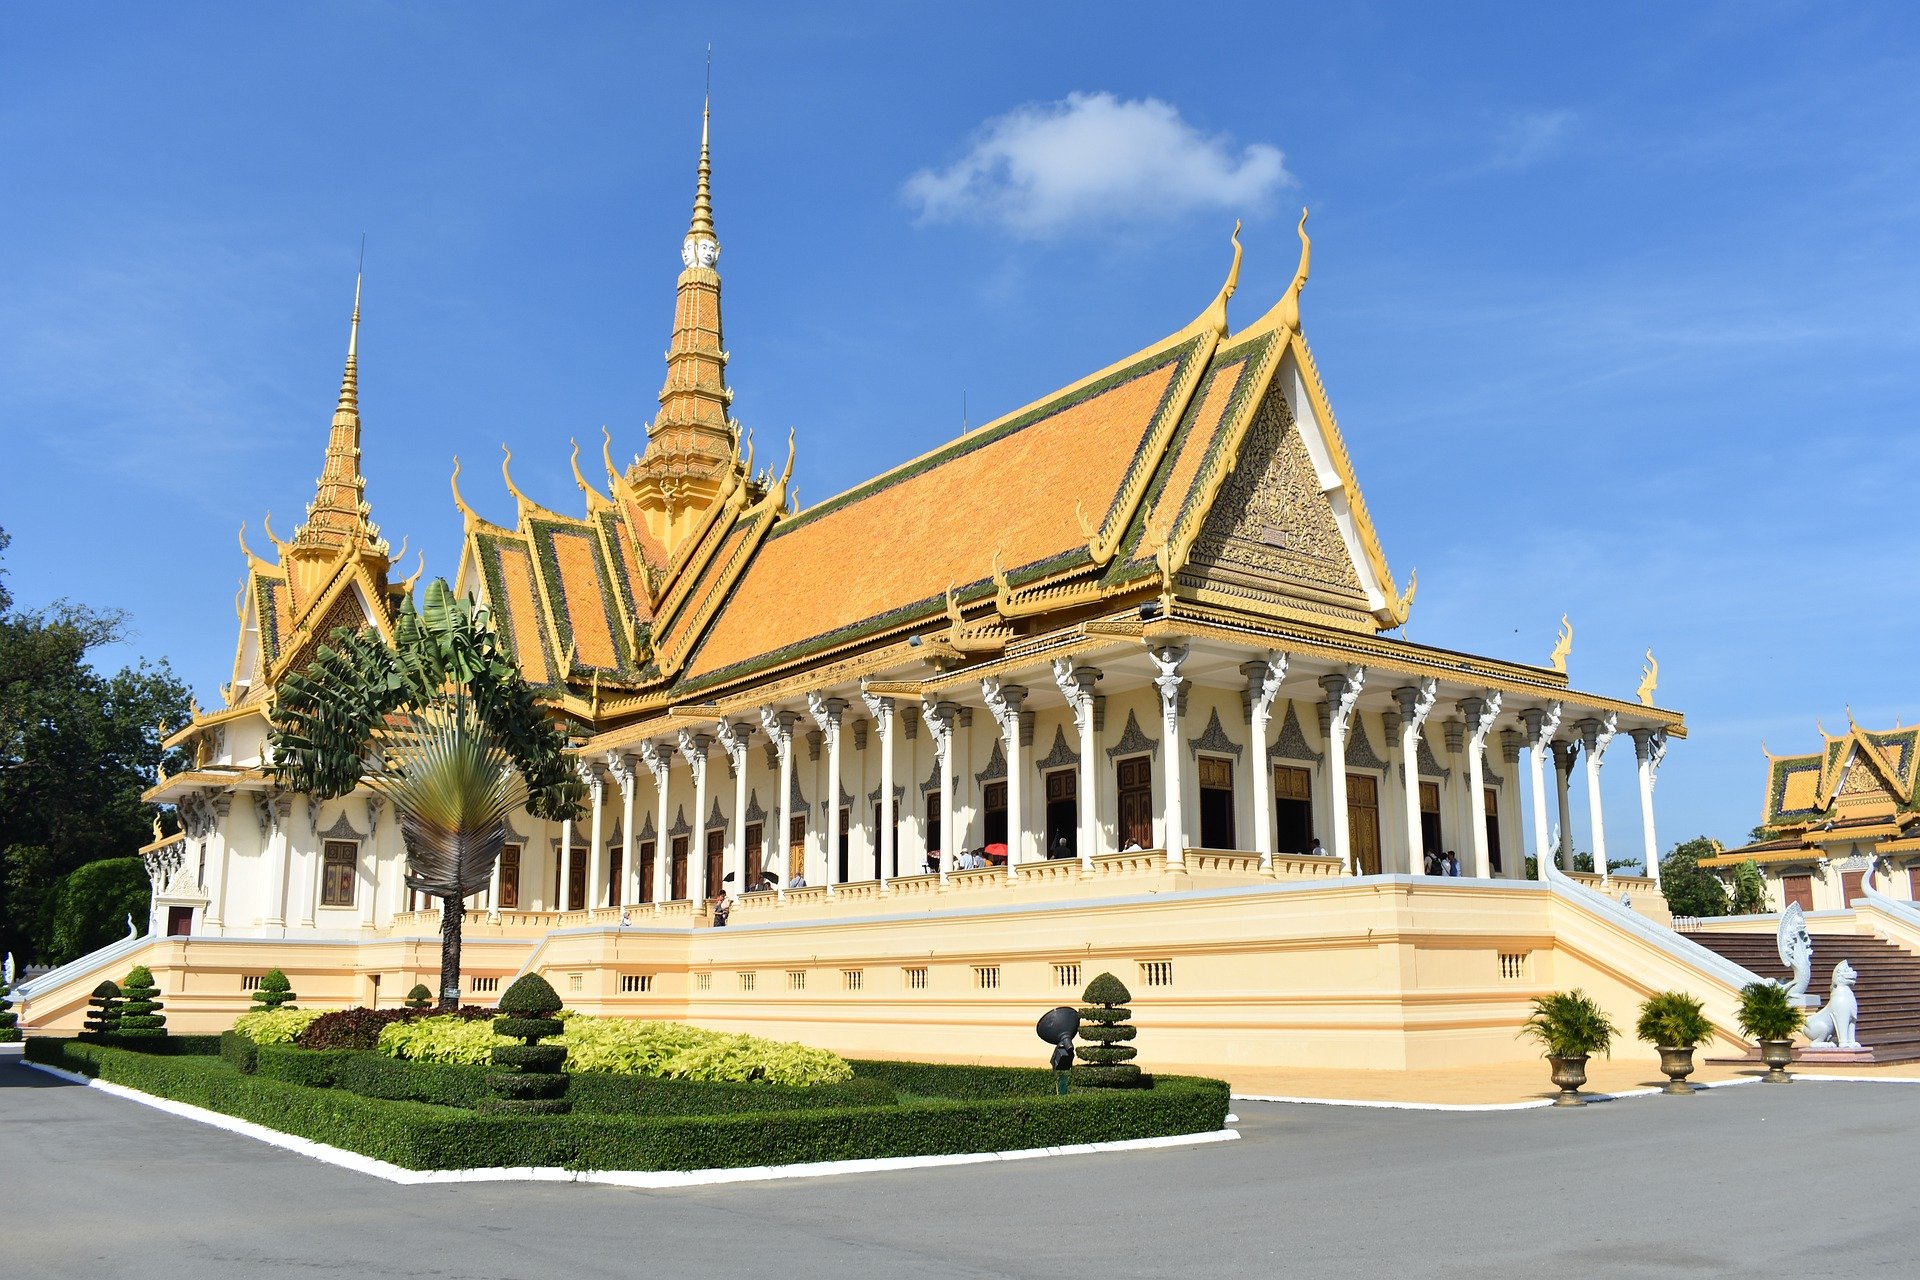 Phnom Penh's Royal Palace